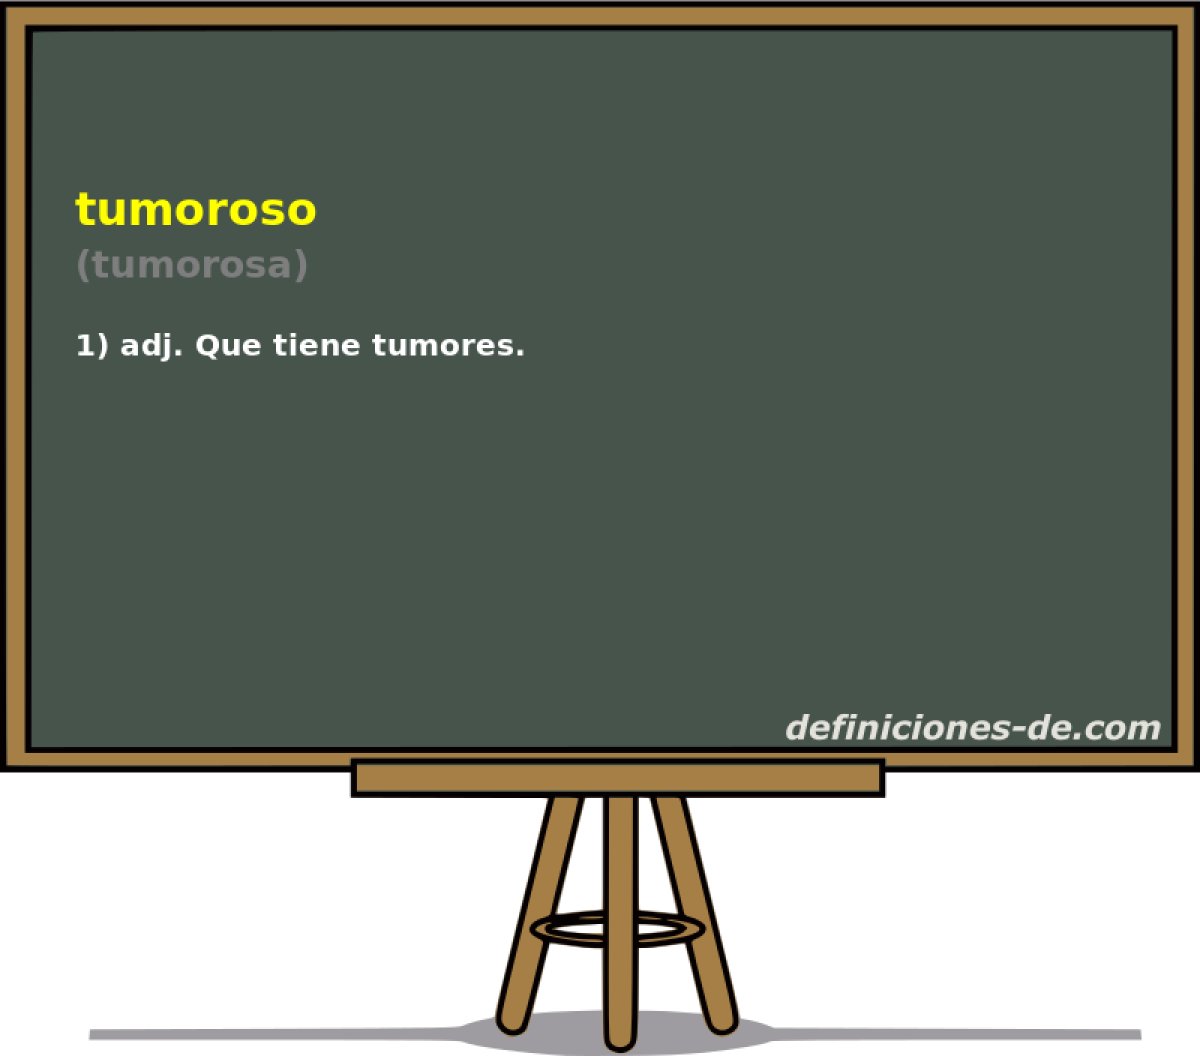 tumoroso (tumorosa)